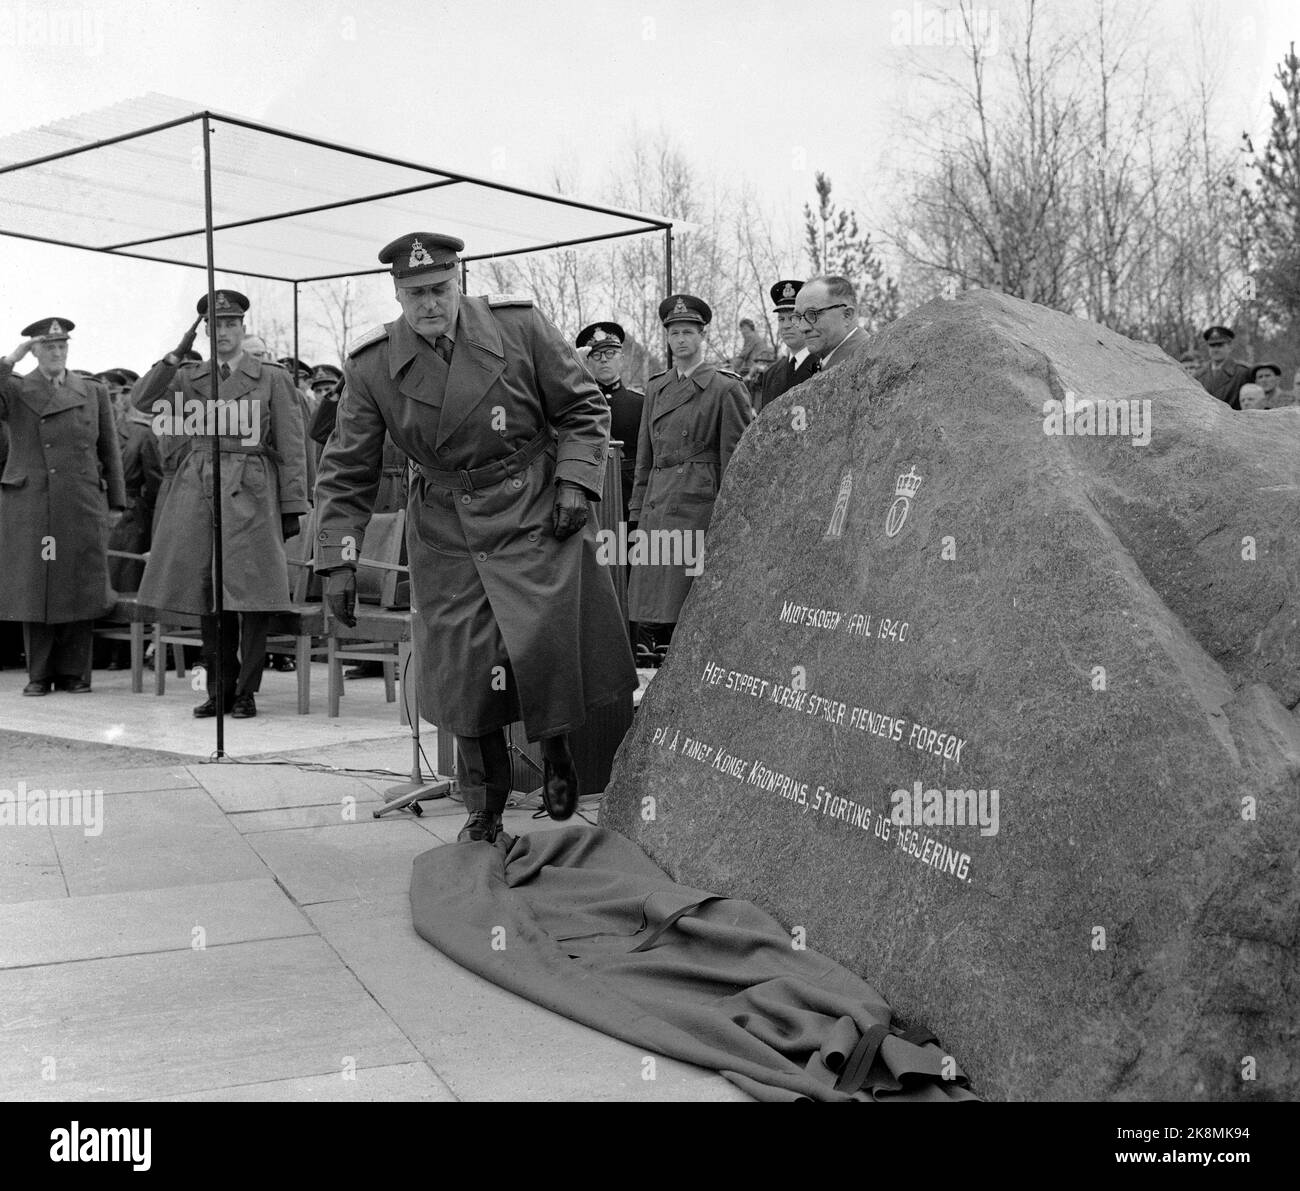 Midskogen a Elverum 19600409 il 20th° anniversario dello scoppio della guerra è segnato nel Midtskogen da re Olav svelare la pietra commemorativa per l'incontro a Midtskogen il 9 aprile 1940. La pietra è una pietra naturale di 12 tonnellate con la seguente iscrizione: 'Midtskogen il 9 aprile 1940. Qui, le forze norvegesi hanno fermato il tentativo del nemico di catturare re, principe ereditario, Storting e governo. ' Foto: NTB / NTB Foto Stock